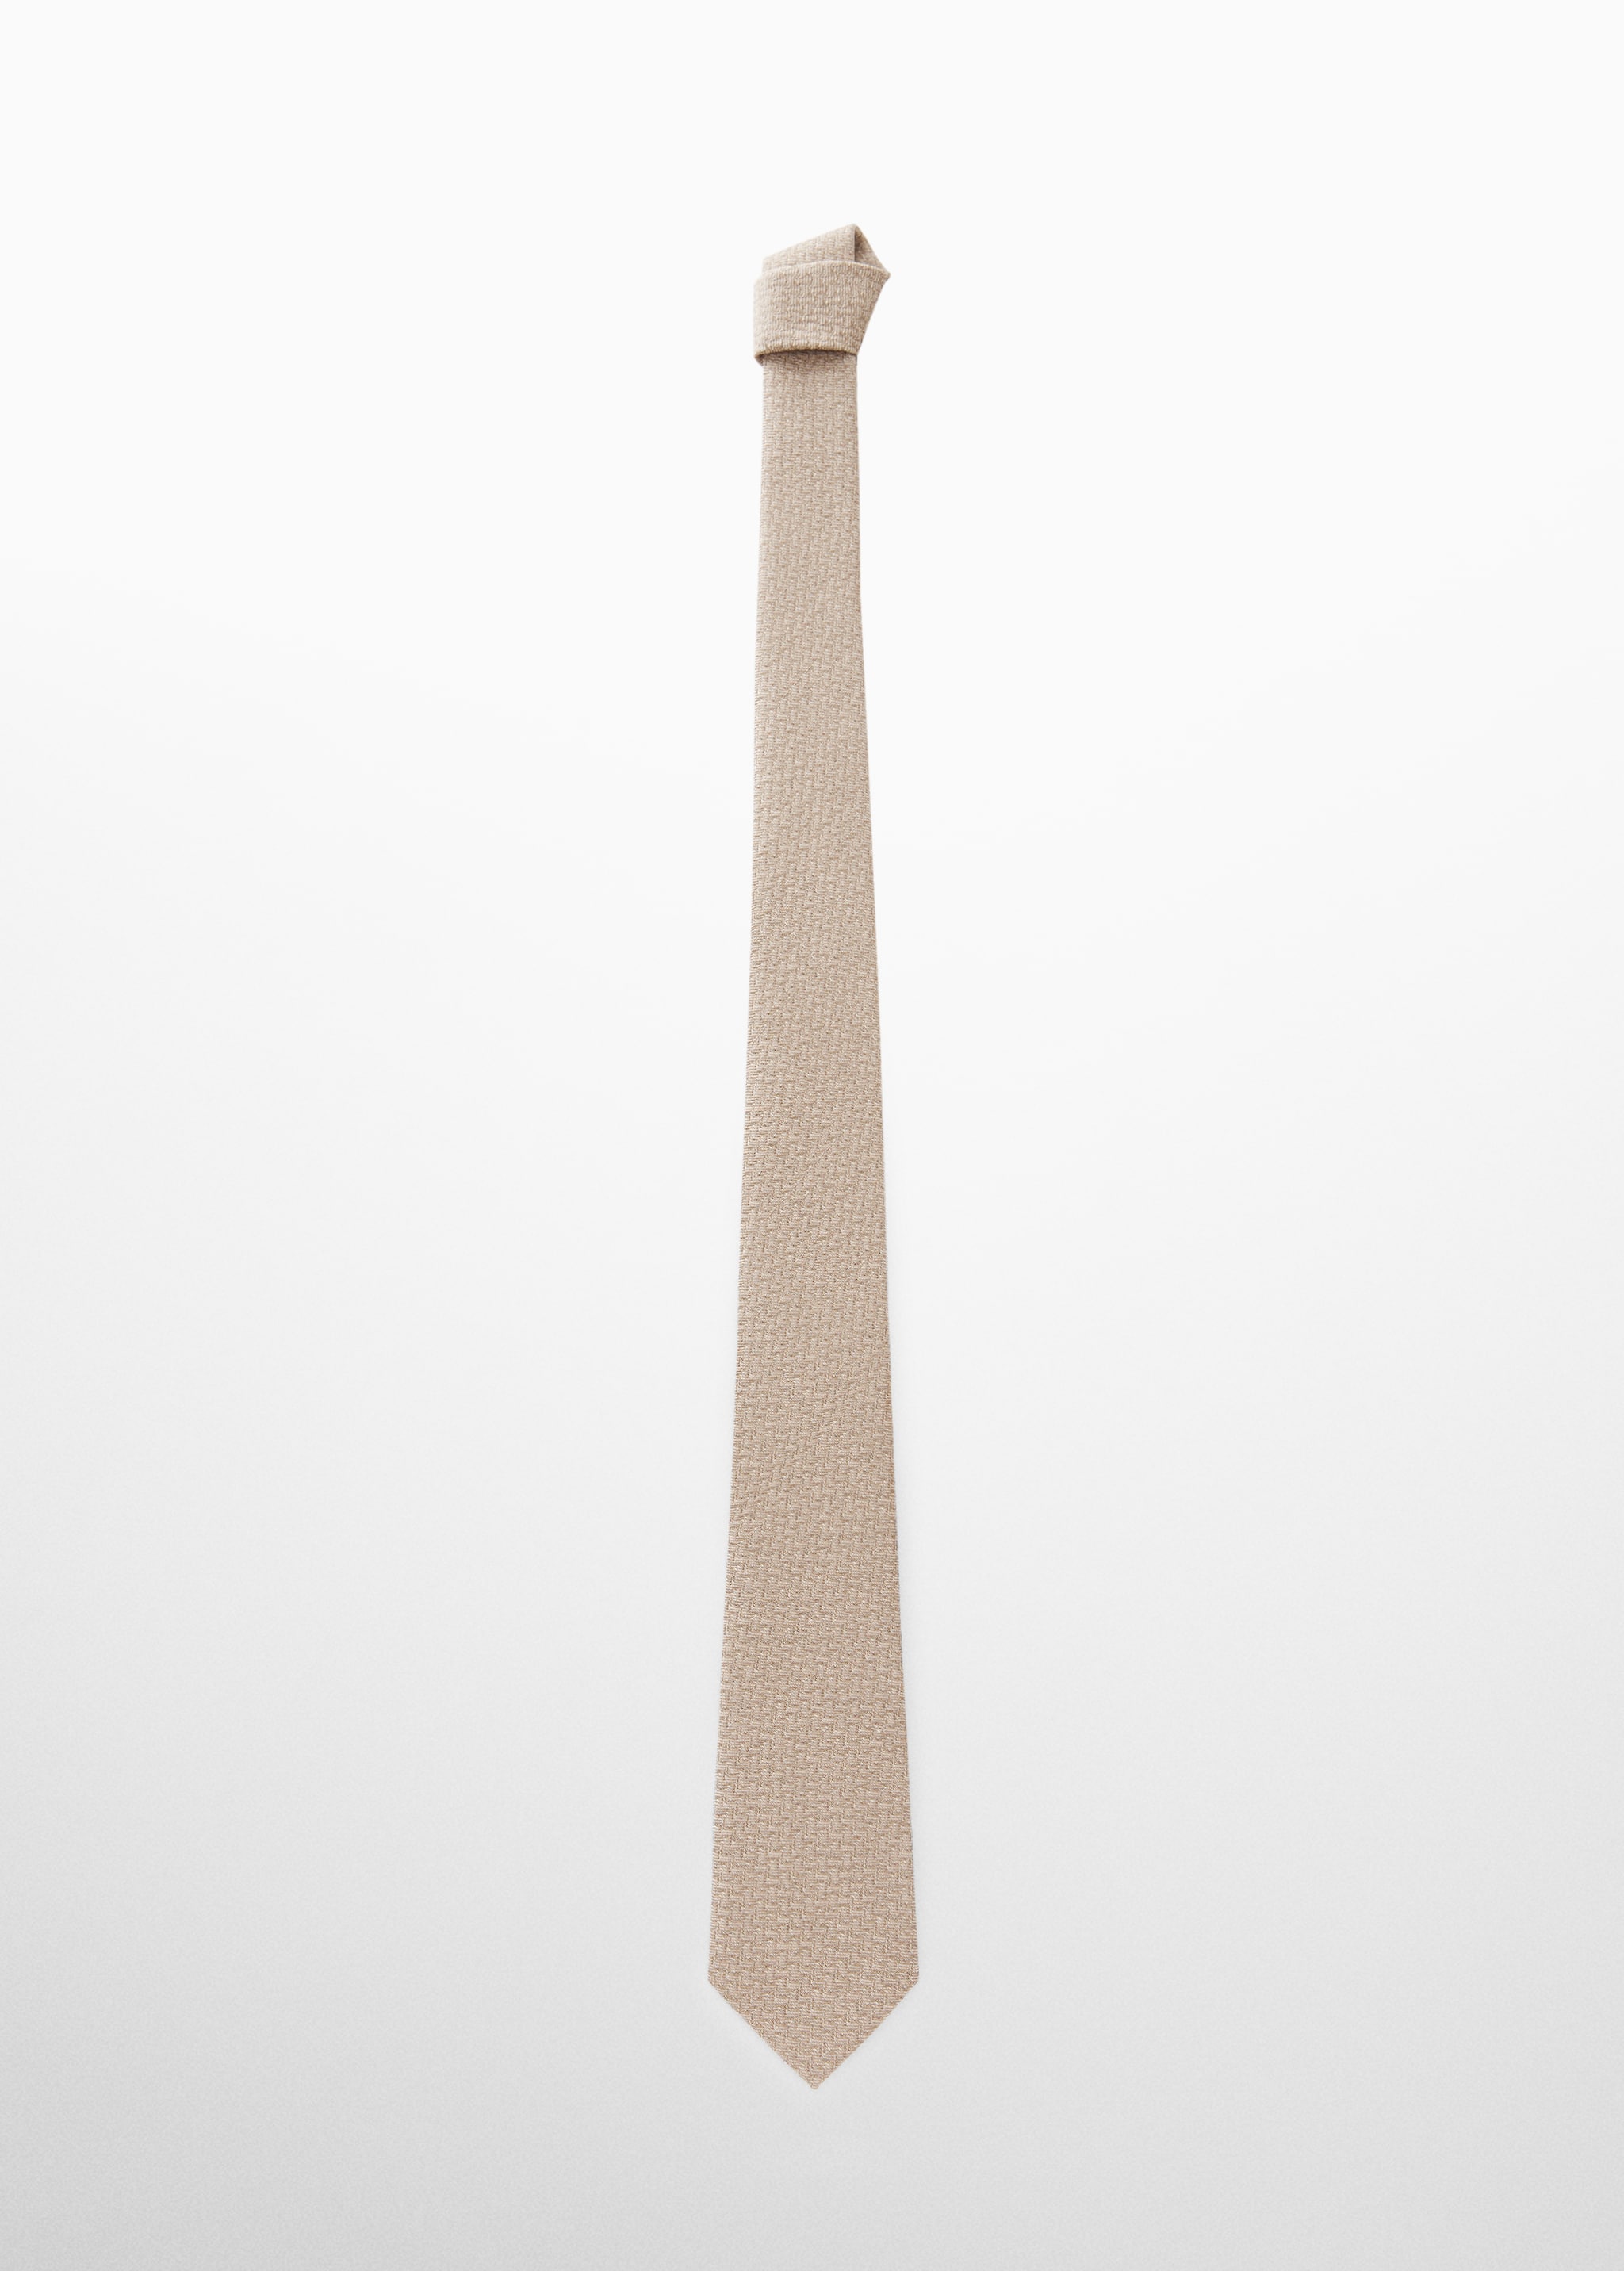 Corbata estructura algodón y lino - Artículo sin modelo